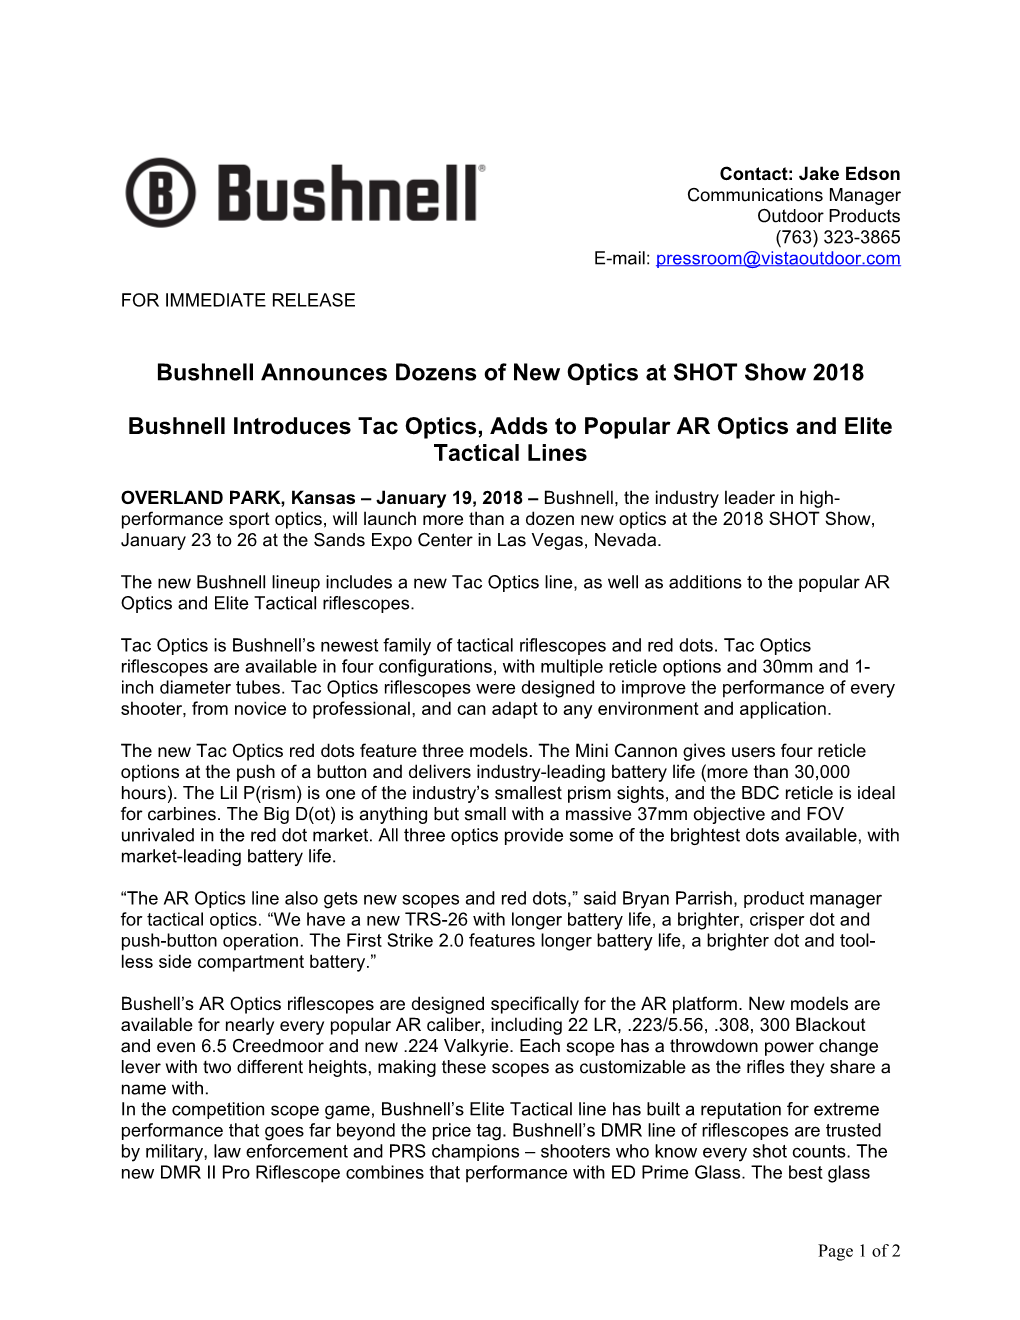 Bushnellannounces Dozens of New Optics at SHOT Show 2018